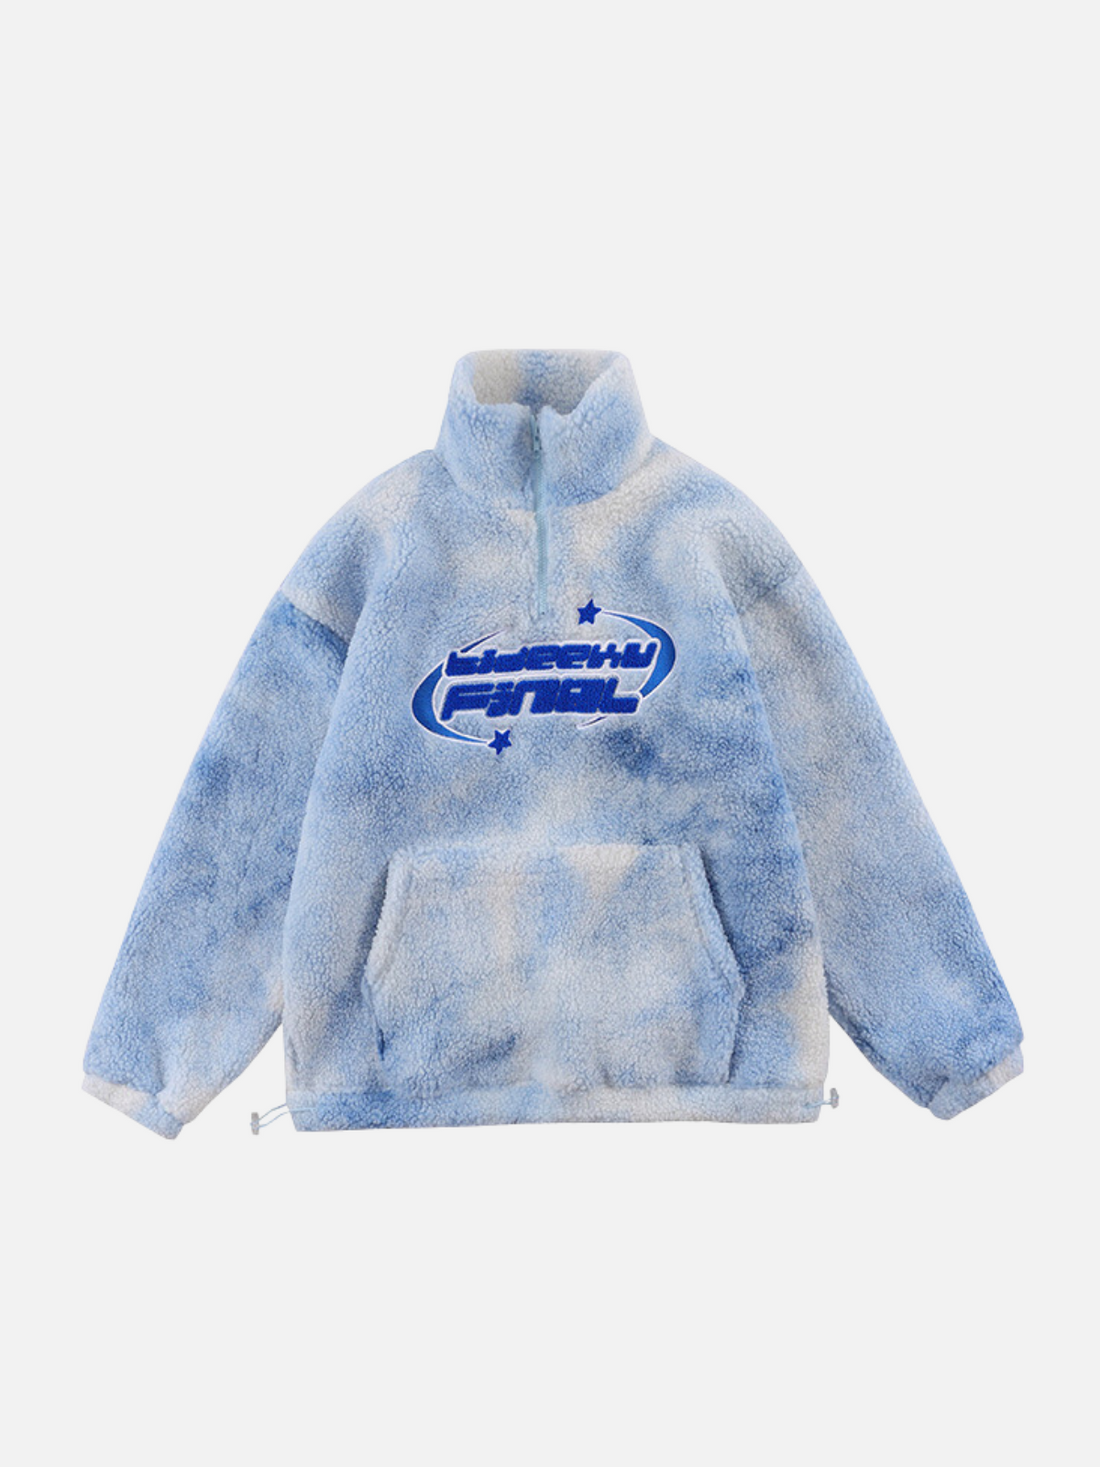 FINAL - Oversized Fleece Jacket Blue | Teenwear.eu